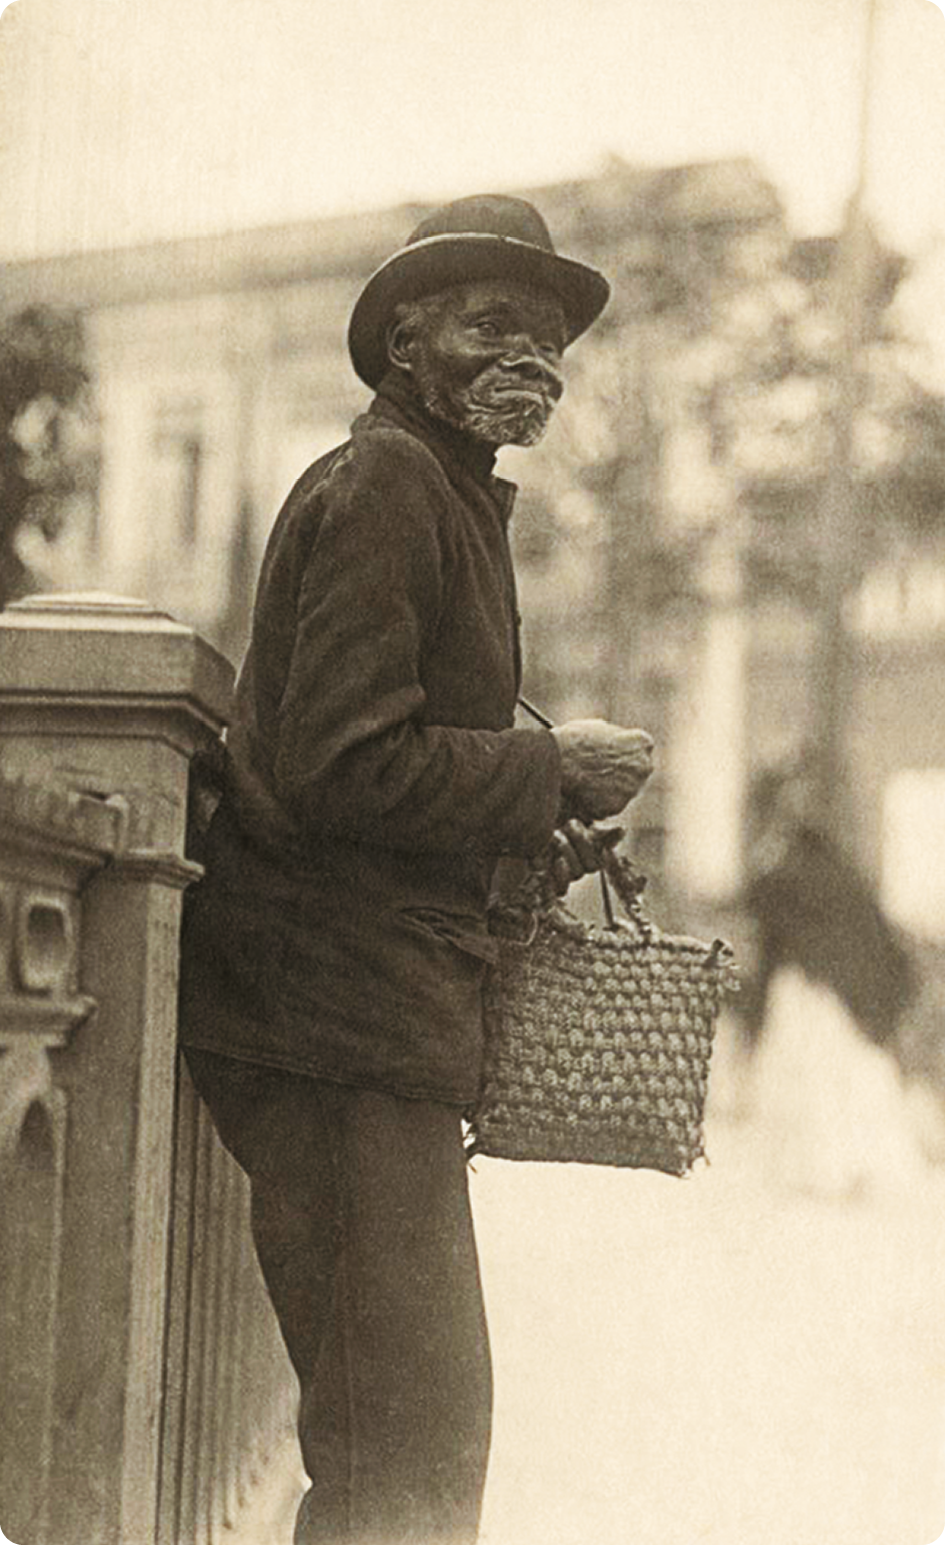 Fotografia em tom sépia. Um homem negro, usando chapéu, camisa e calça, está de pé segurando uma sacola com as mãos.